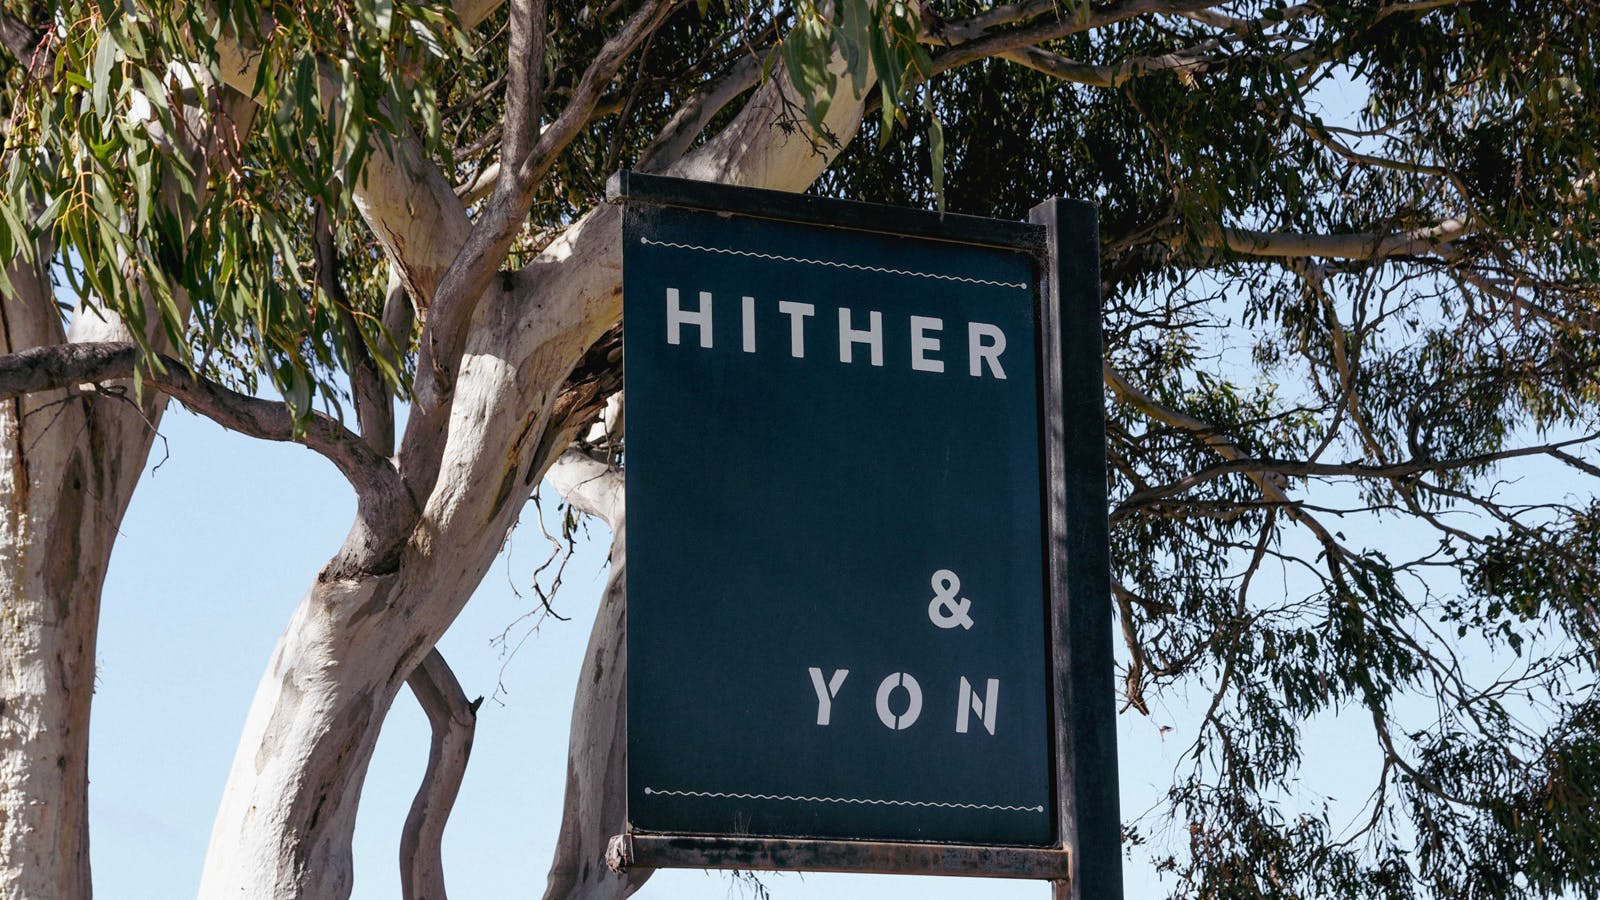 Hither & Yon